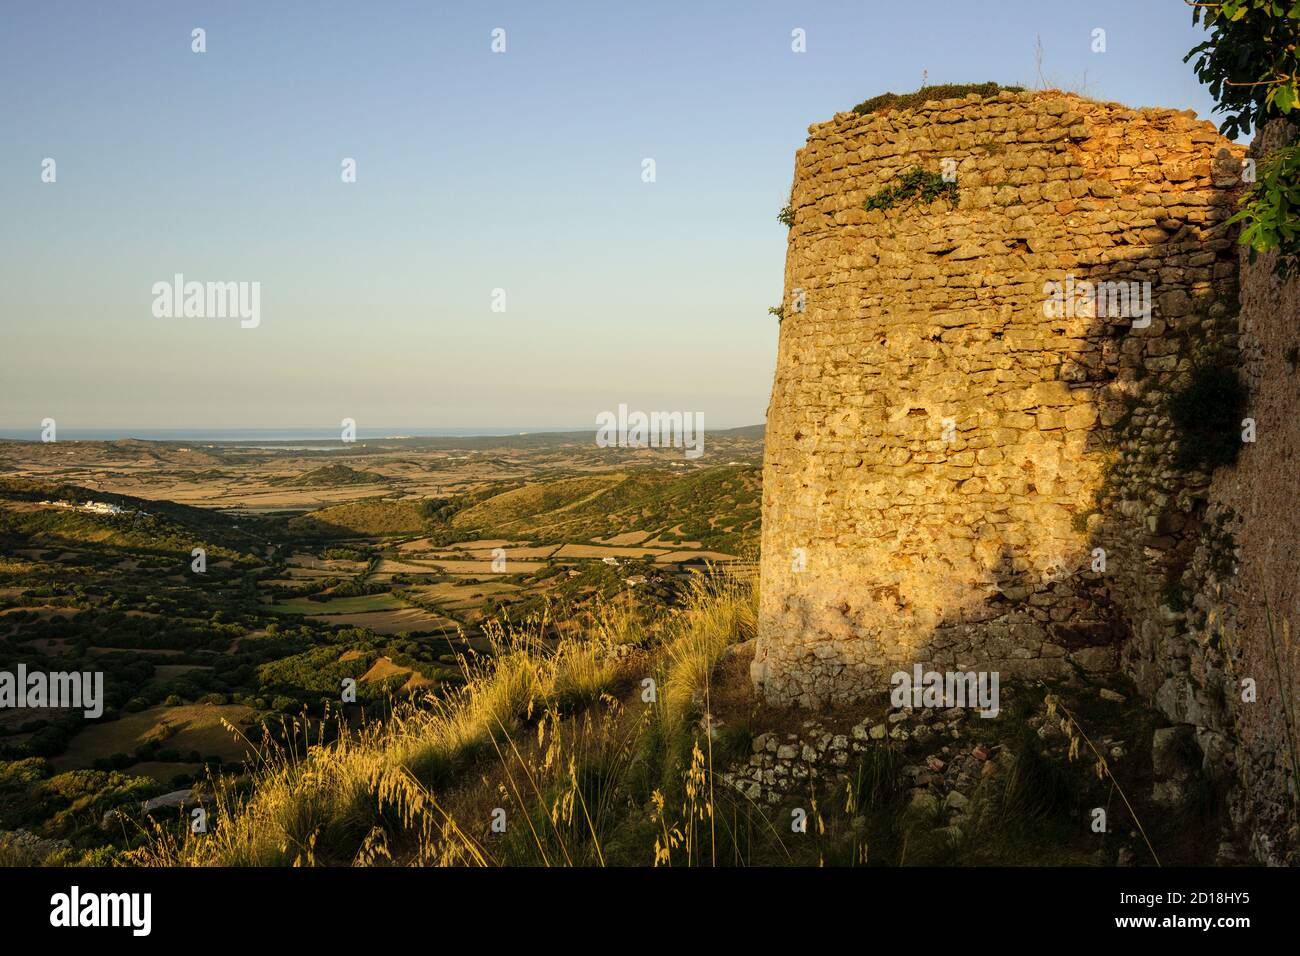 Castillo de Santa Águeda  - Sent Agaiz- , antes de 1232, término municipal de Ferrerías, Menorca, Islas Baleares, españa, europa Stock Photo